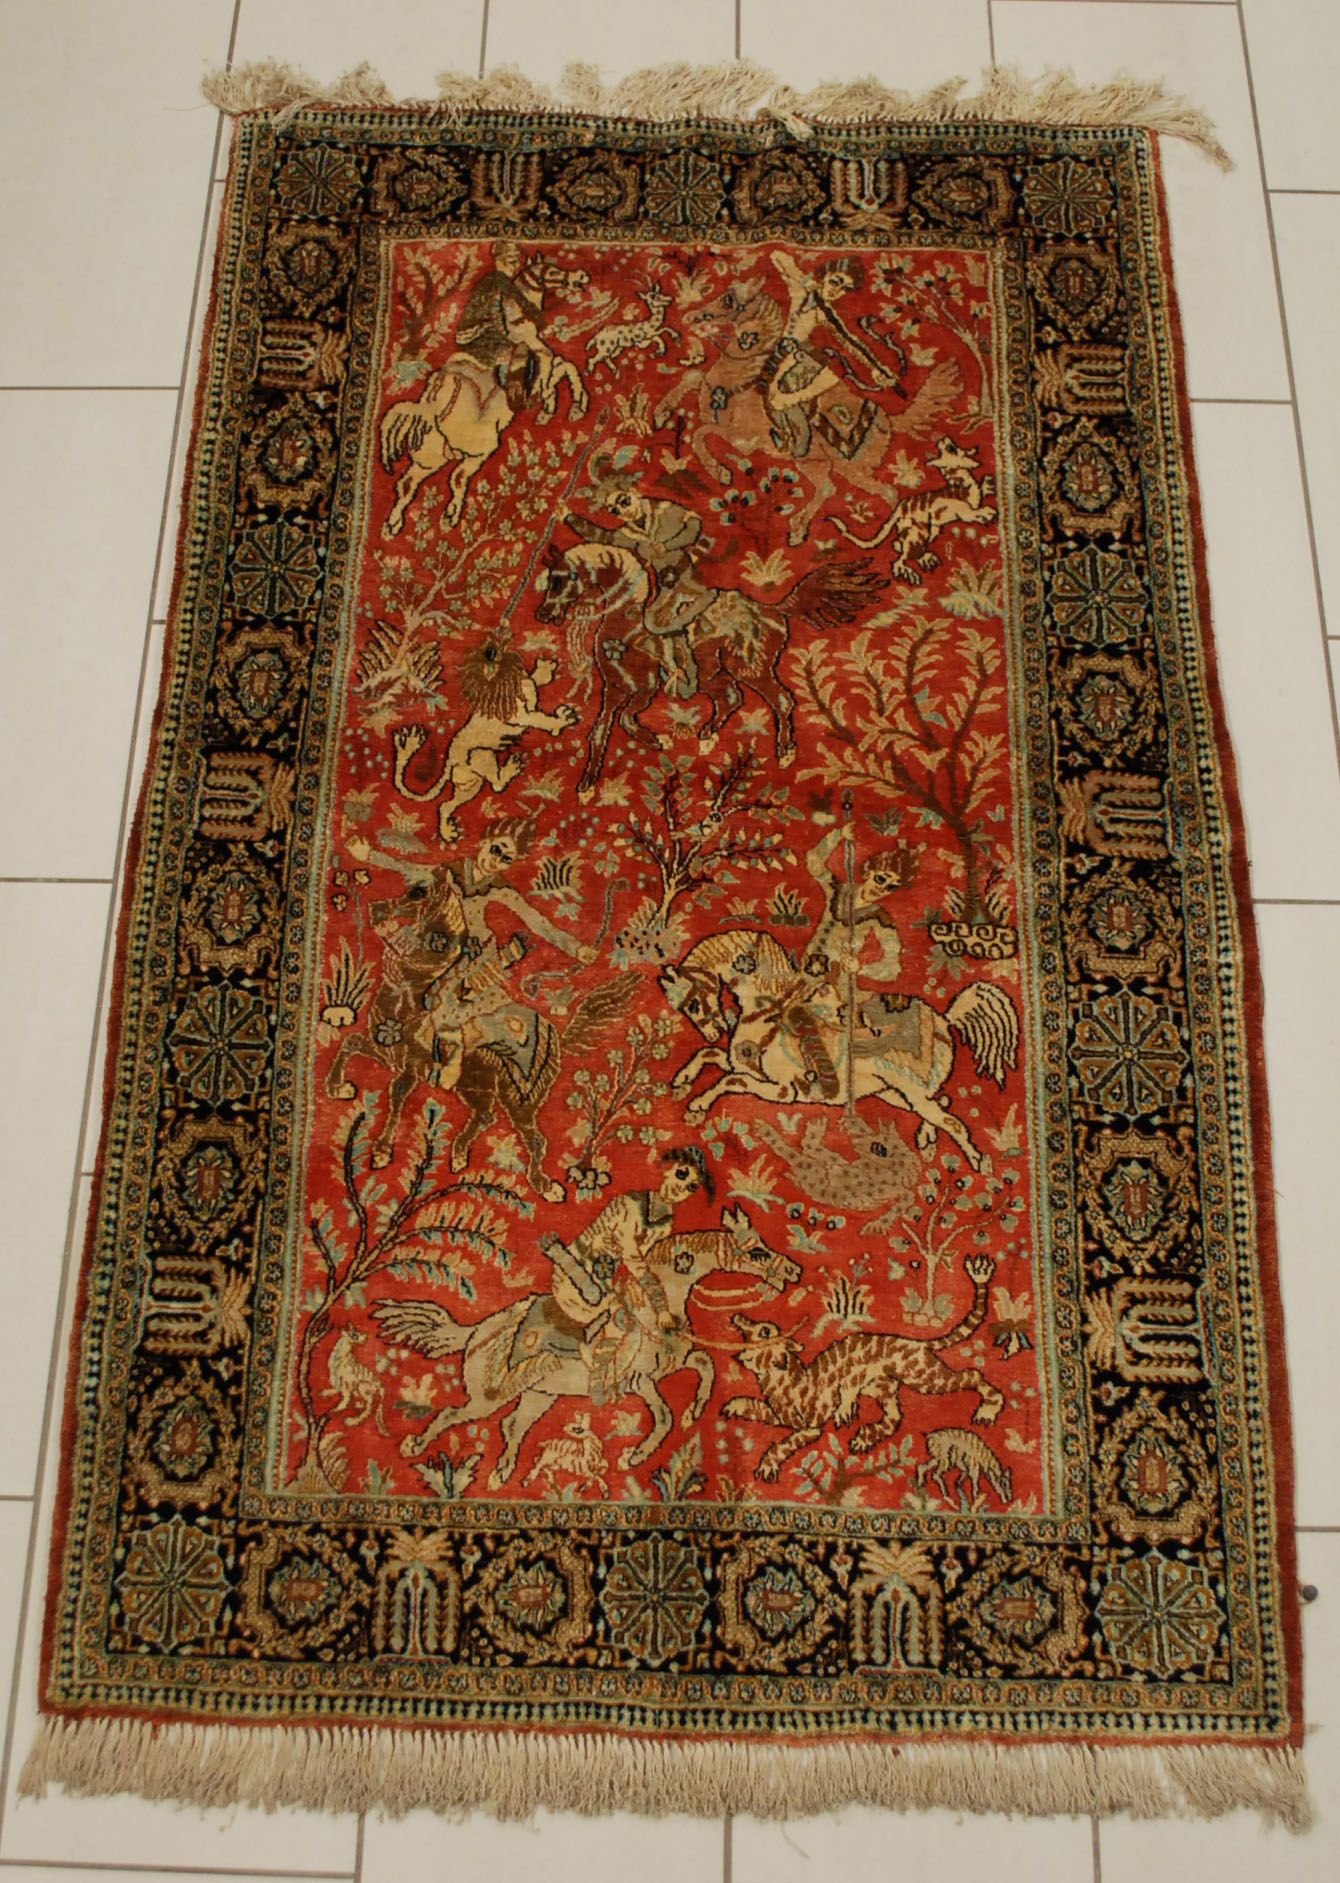 Tapis de chasse Goum en soie. (légère décoloration).

Dim.: 177 x 108 cm.